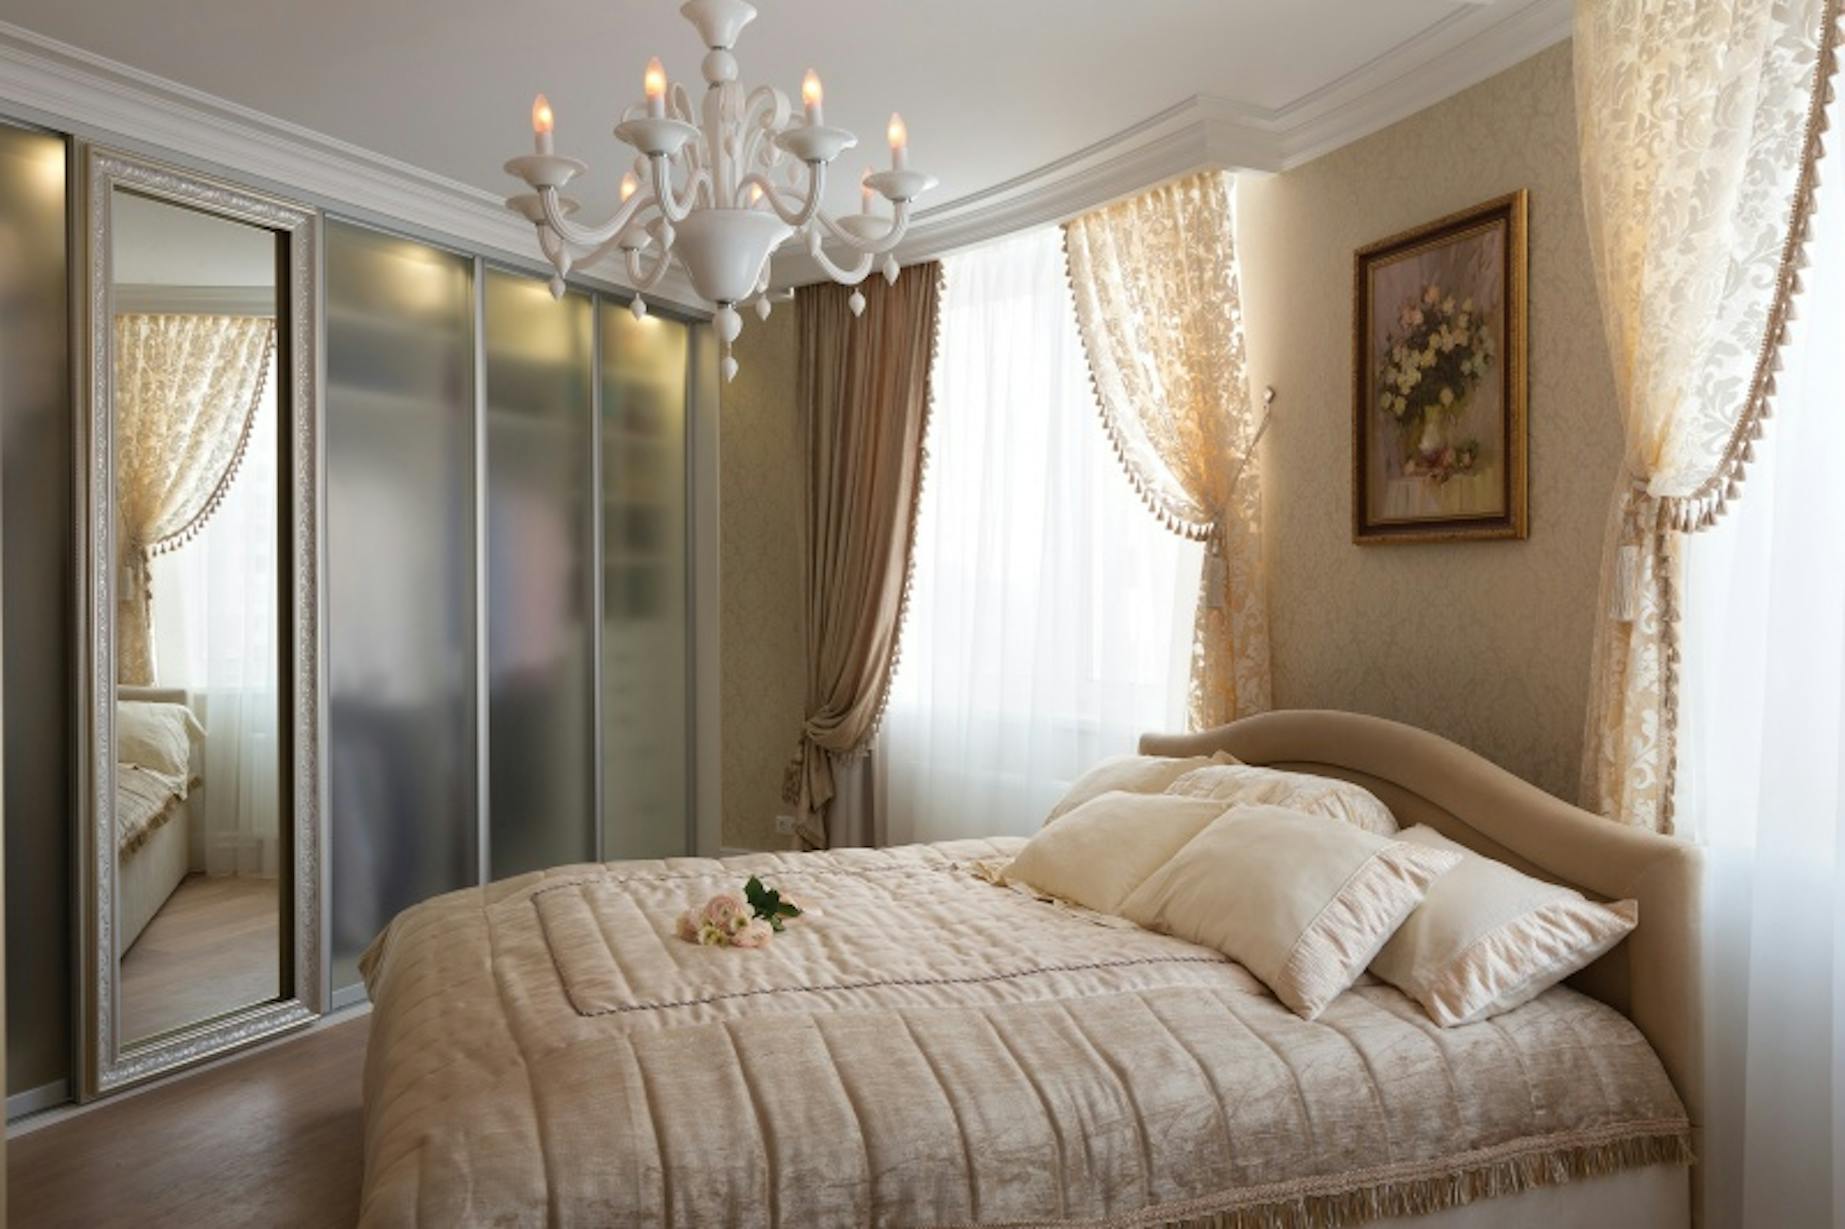 Спальня французский стиль Люкс Ритц. Дизайн спальни в светлых тонах классический стиль. Зеркало напротив кровати в спальне. Бежевые классические шторы в спальню. Можно ставить зеркала в спальне